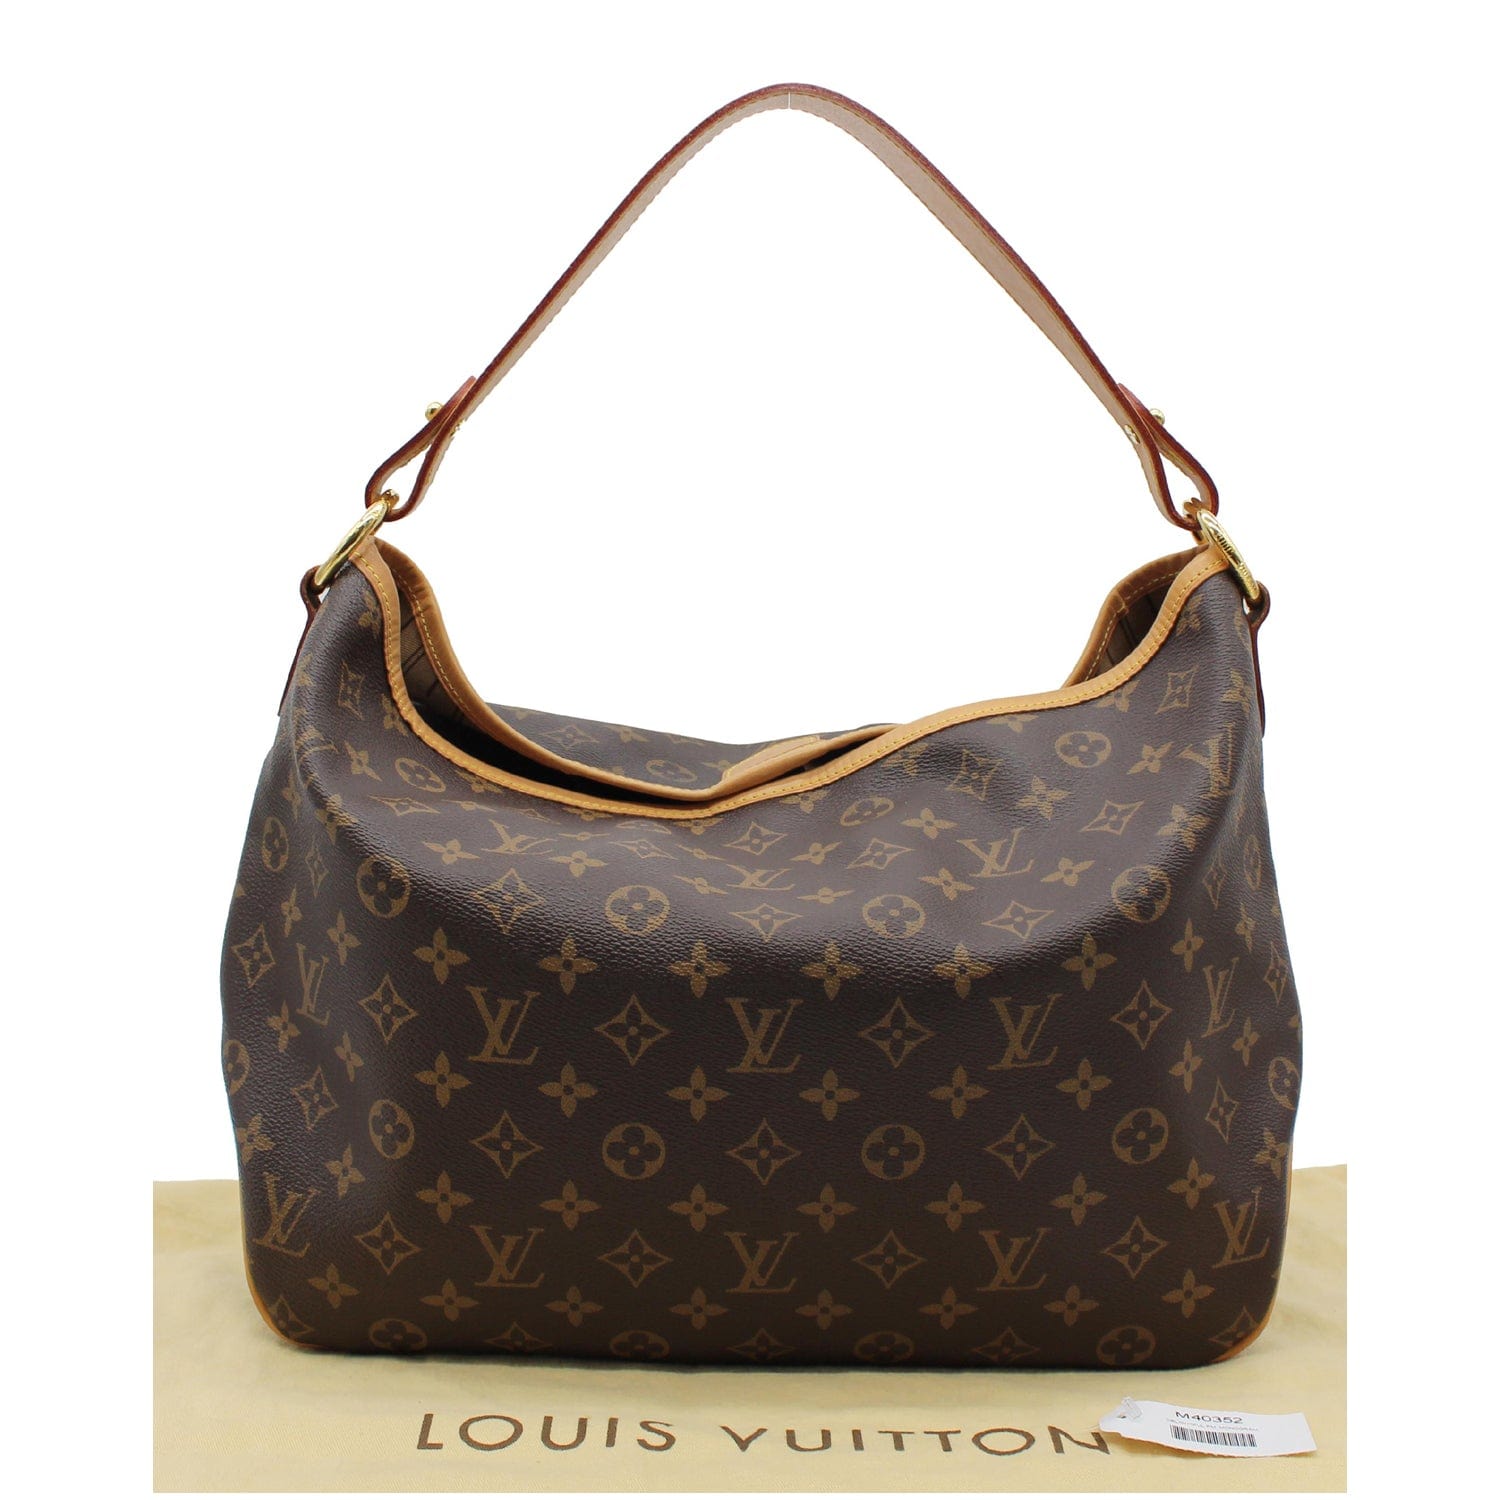 Louis Vuitton Delightful PM Monogram Canvas Top Handle Bag on SALE